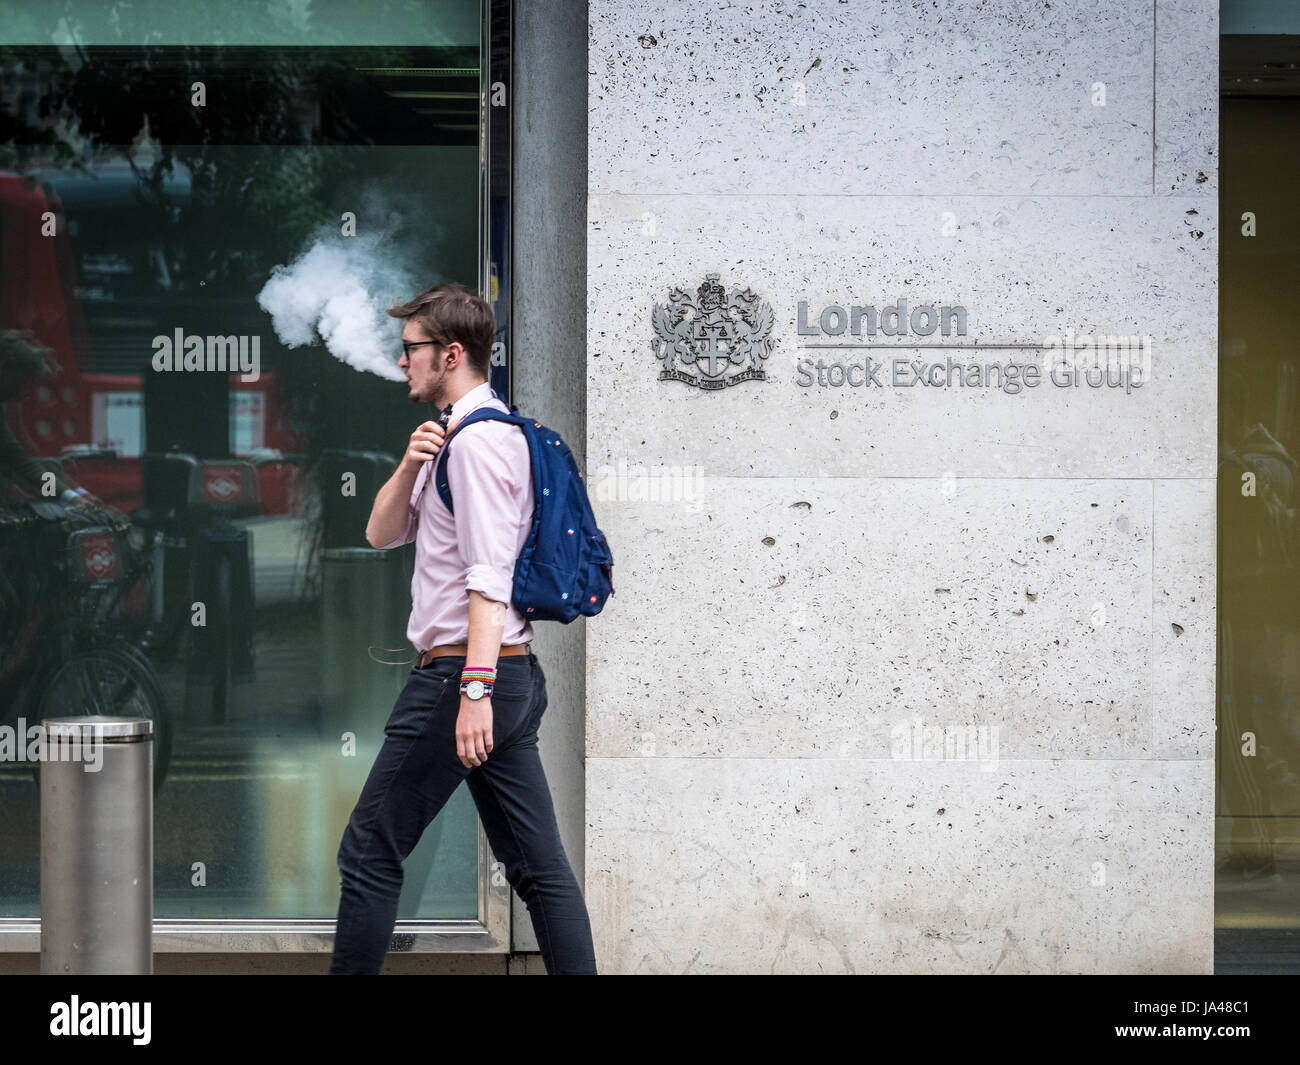 London Stock Exchange (LSE - un travailleur de la ville exhale en passant de la vapeur la Bourse de Londres des bureaux dans la ville de London, UK Banque D'Images